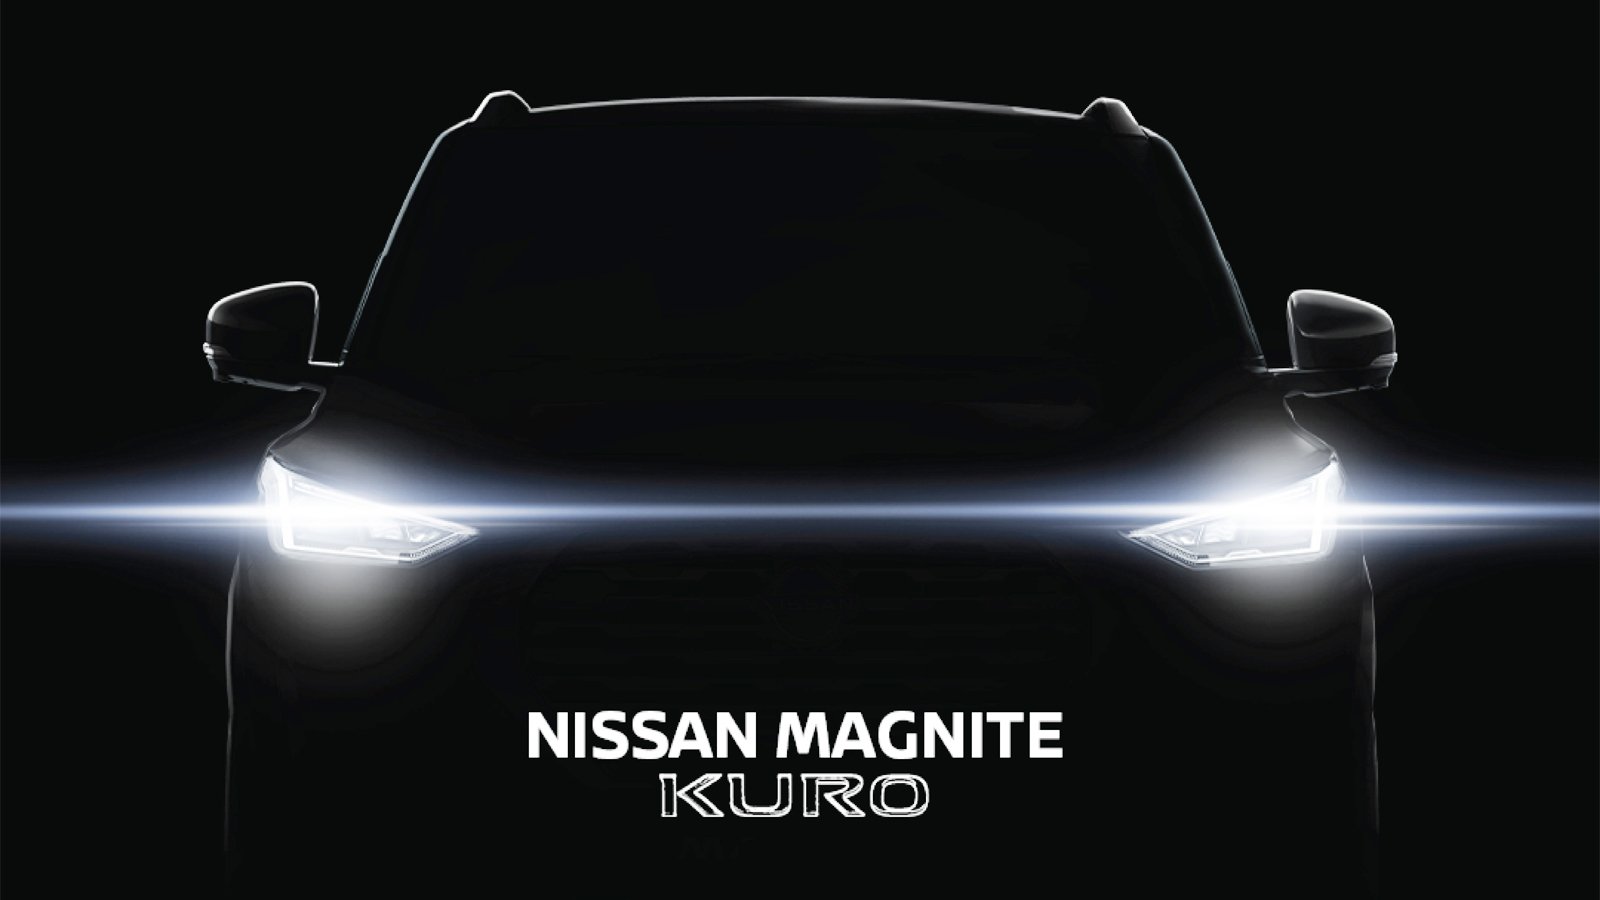 Nissan Magnite KURO स्‍पेशल एडिशन जल्द होगा लॉन्च, जानिए क्या है इसमें खास